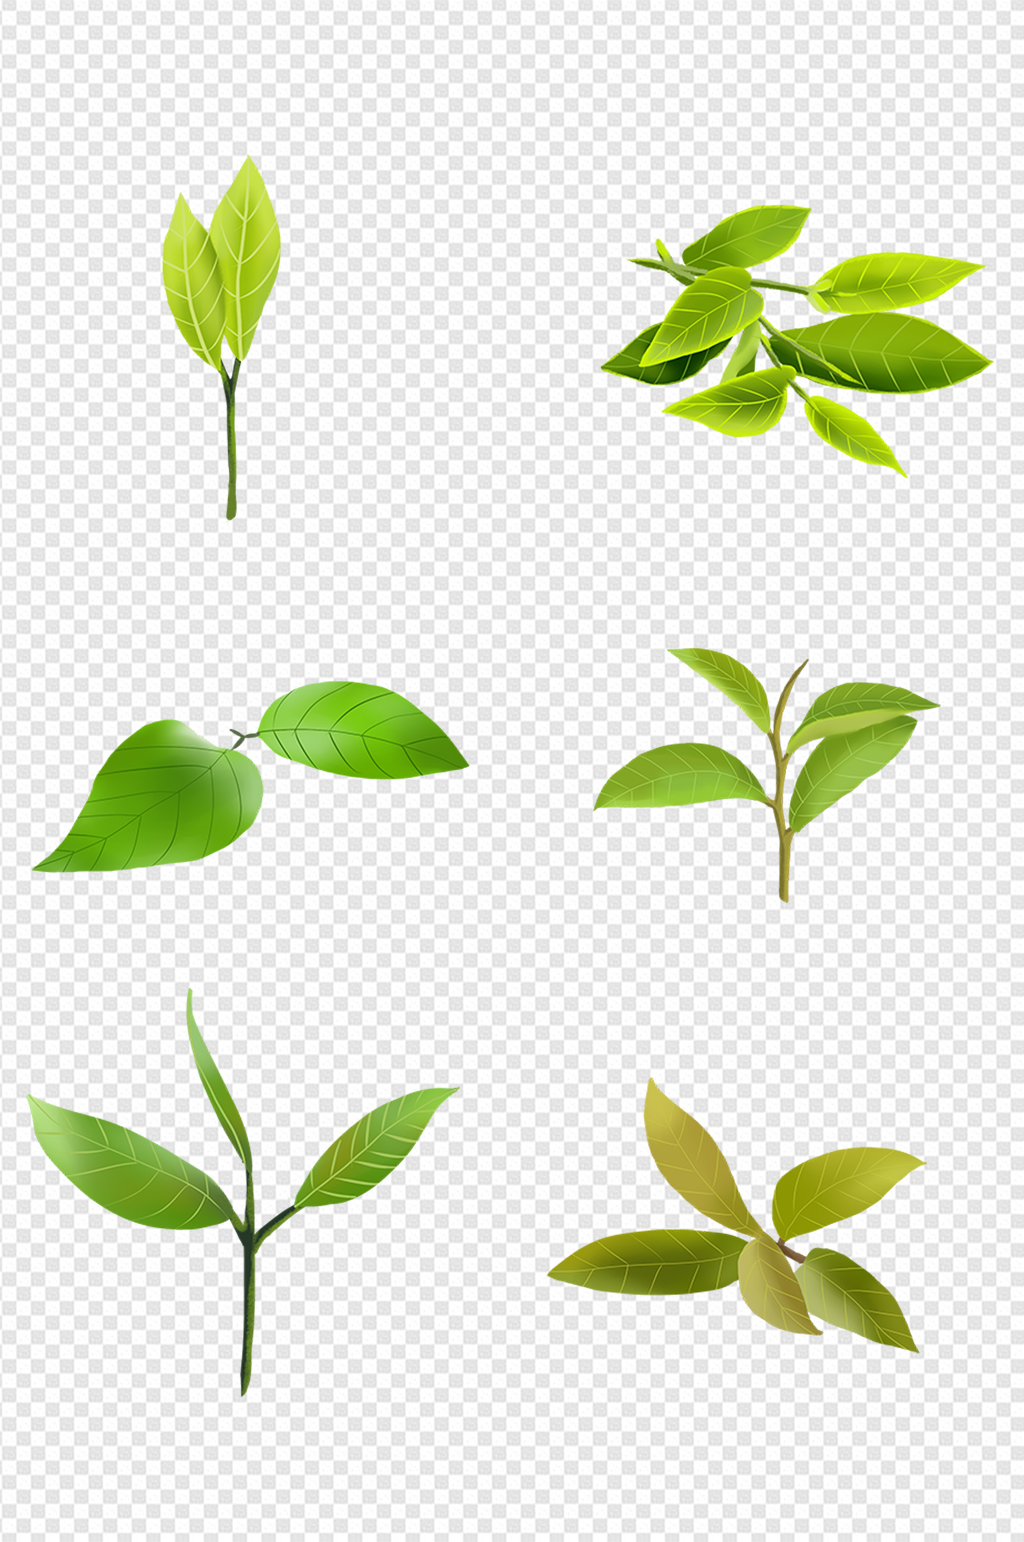 茶叶的生长过程图画图片